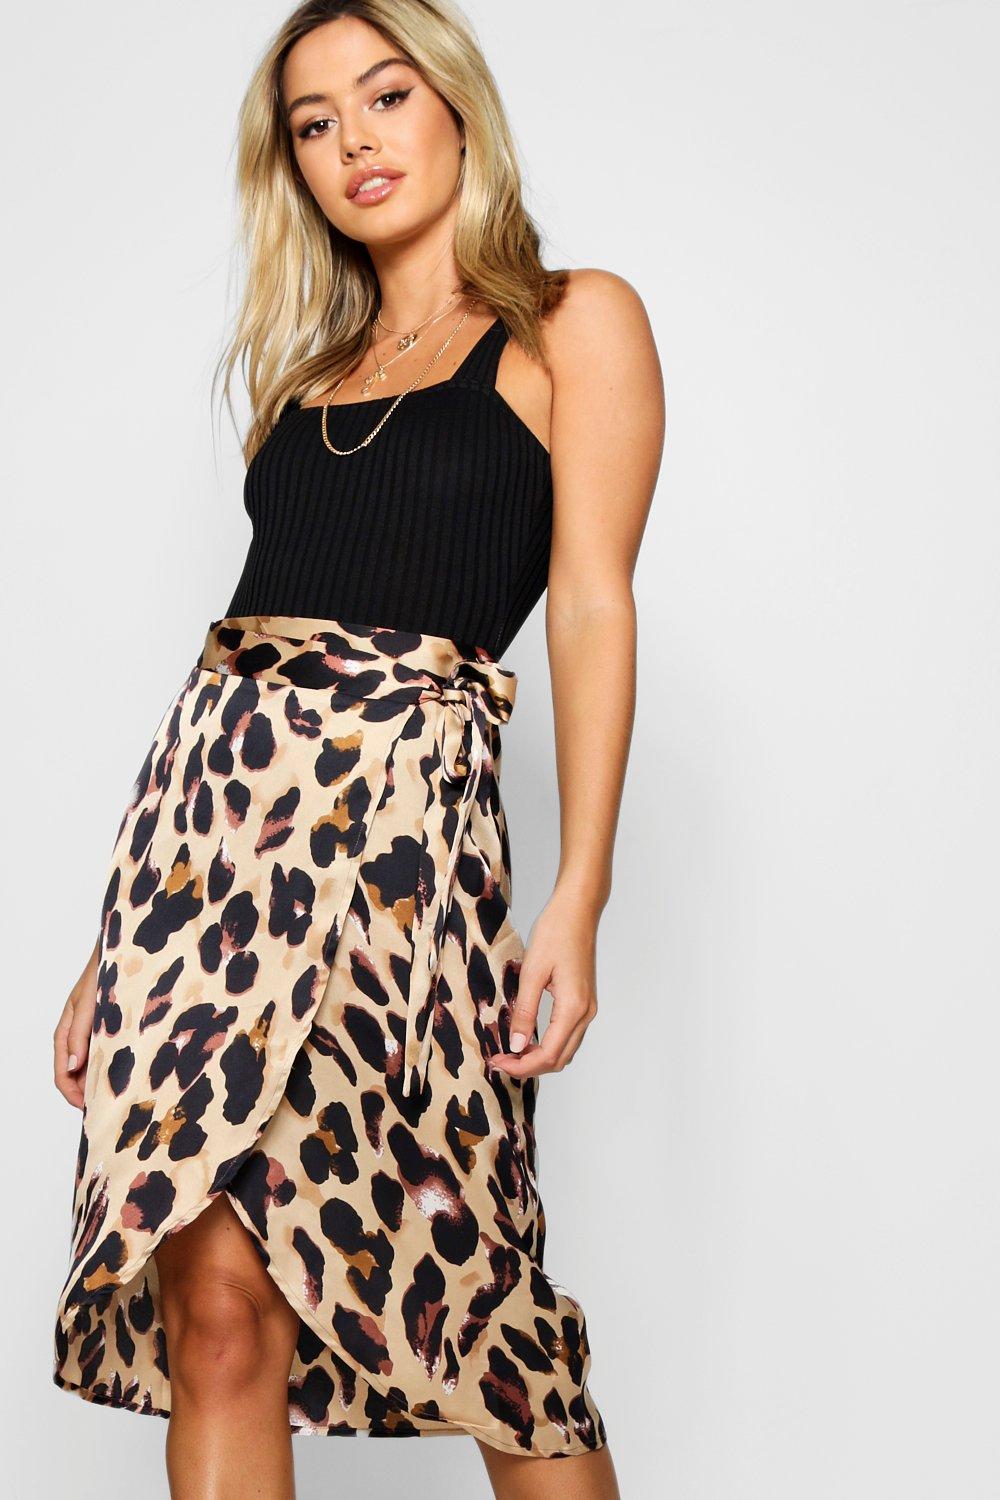 ❤️ Womens Leopard Print Wrap Skirts Ladies Evening Clubwear High Slit Midi Skirt 